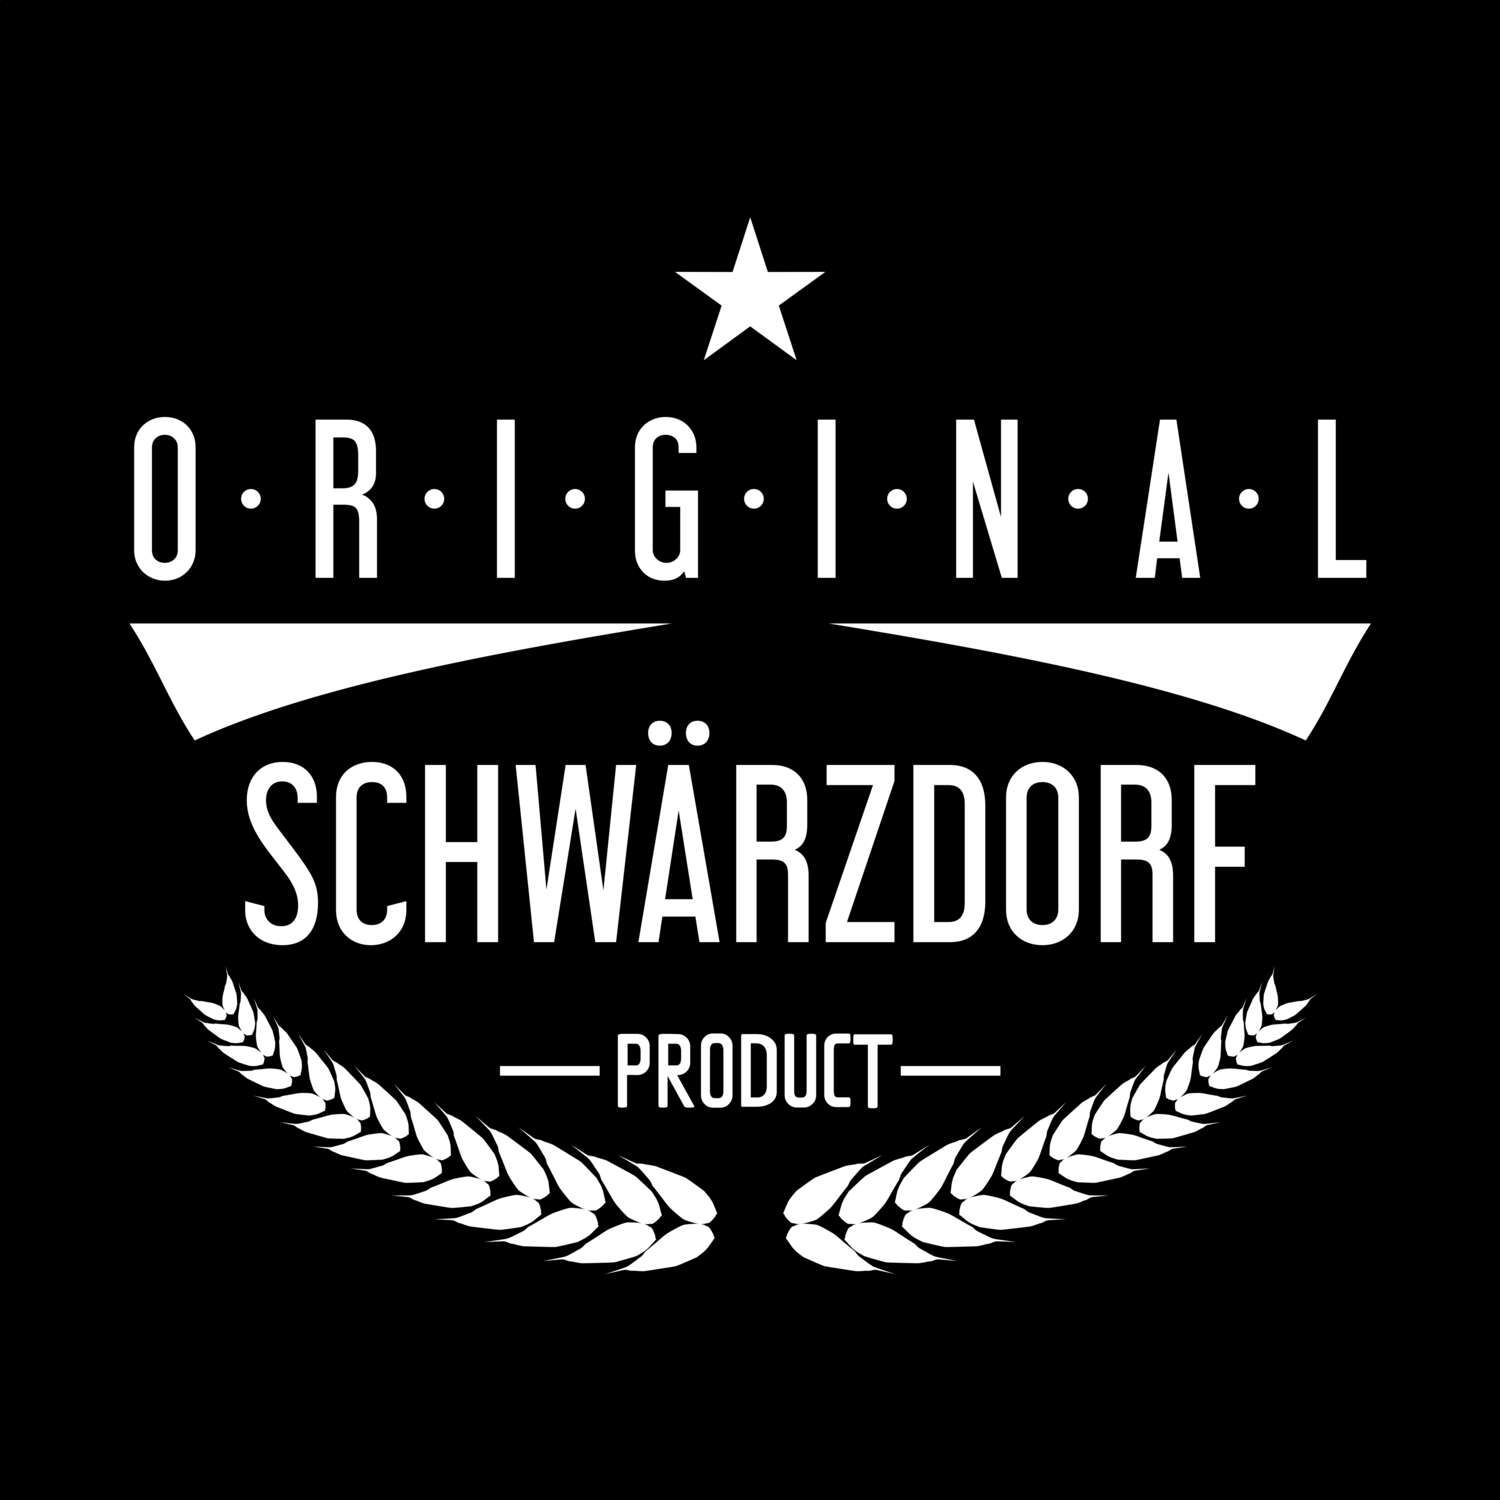 Schwärzdorf T-Shirt »Original Product«